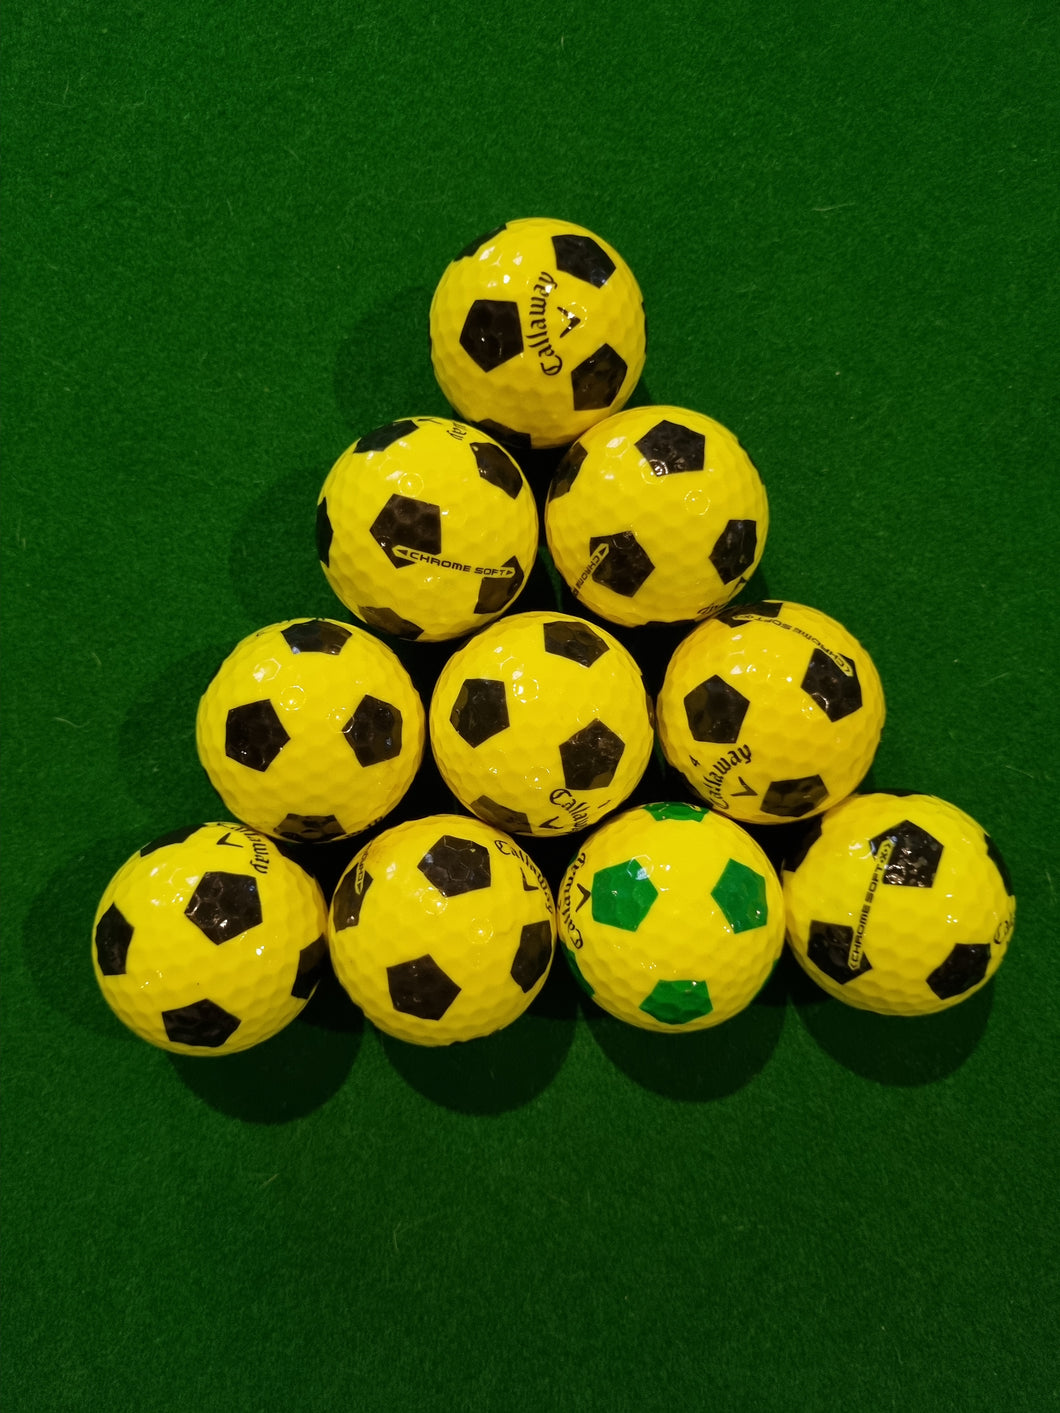 Callaway Truvis Chrome Soft Golf Balls - 10 balls per Pack